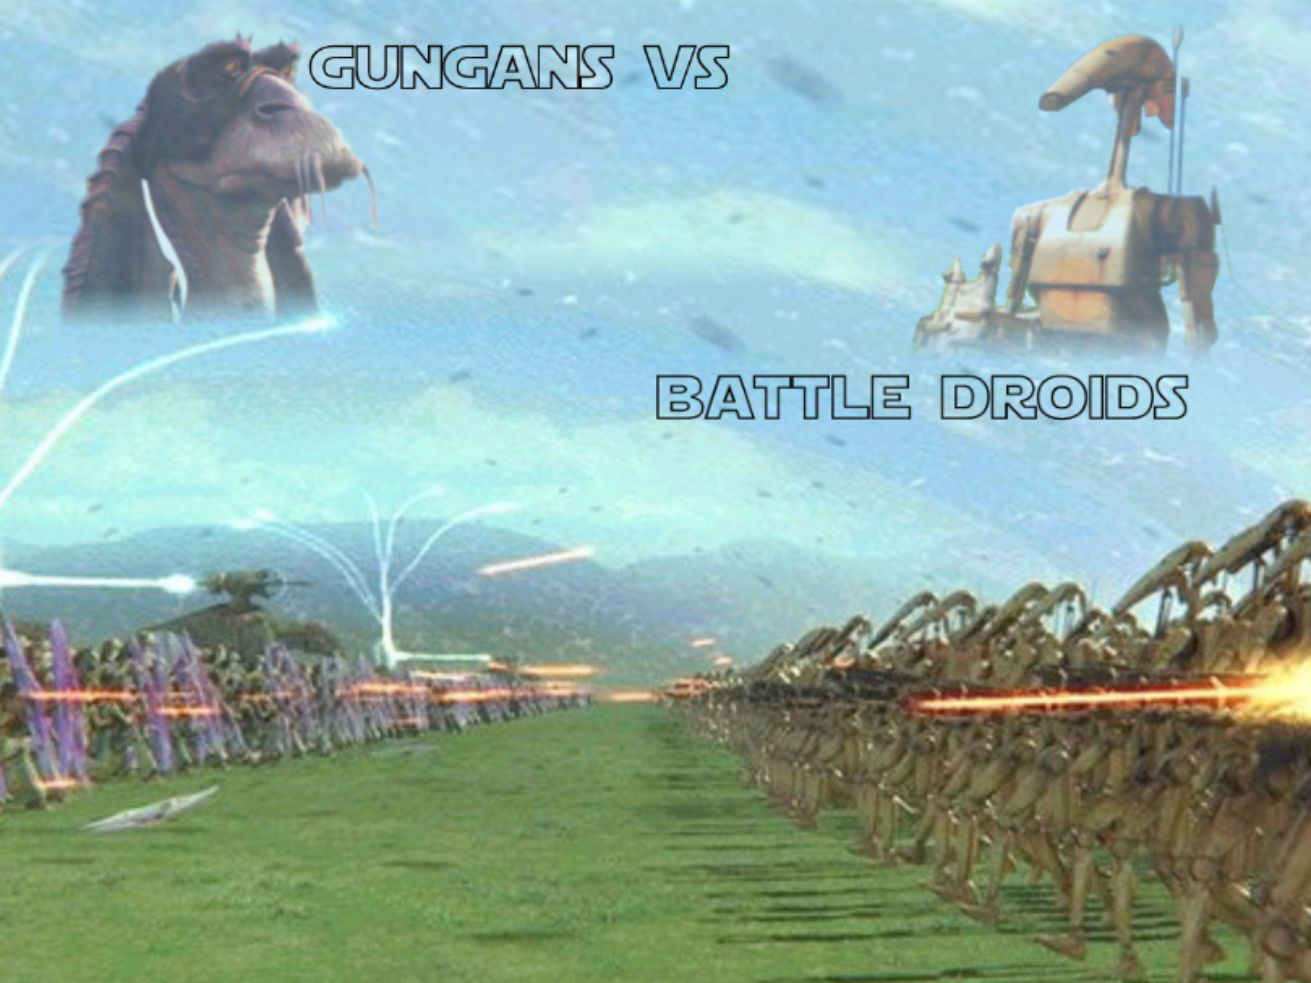 Gungans vs. Battle Droids